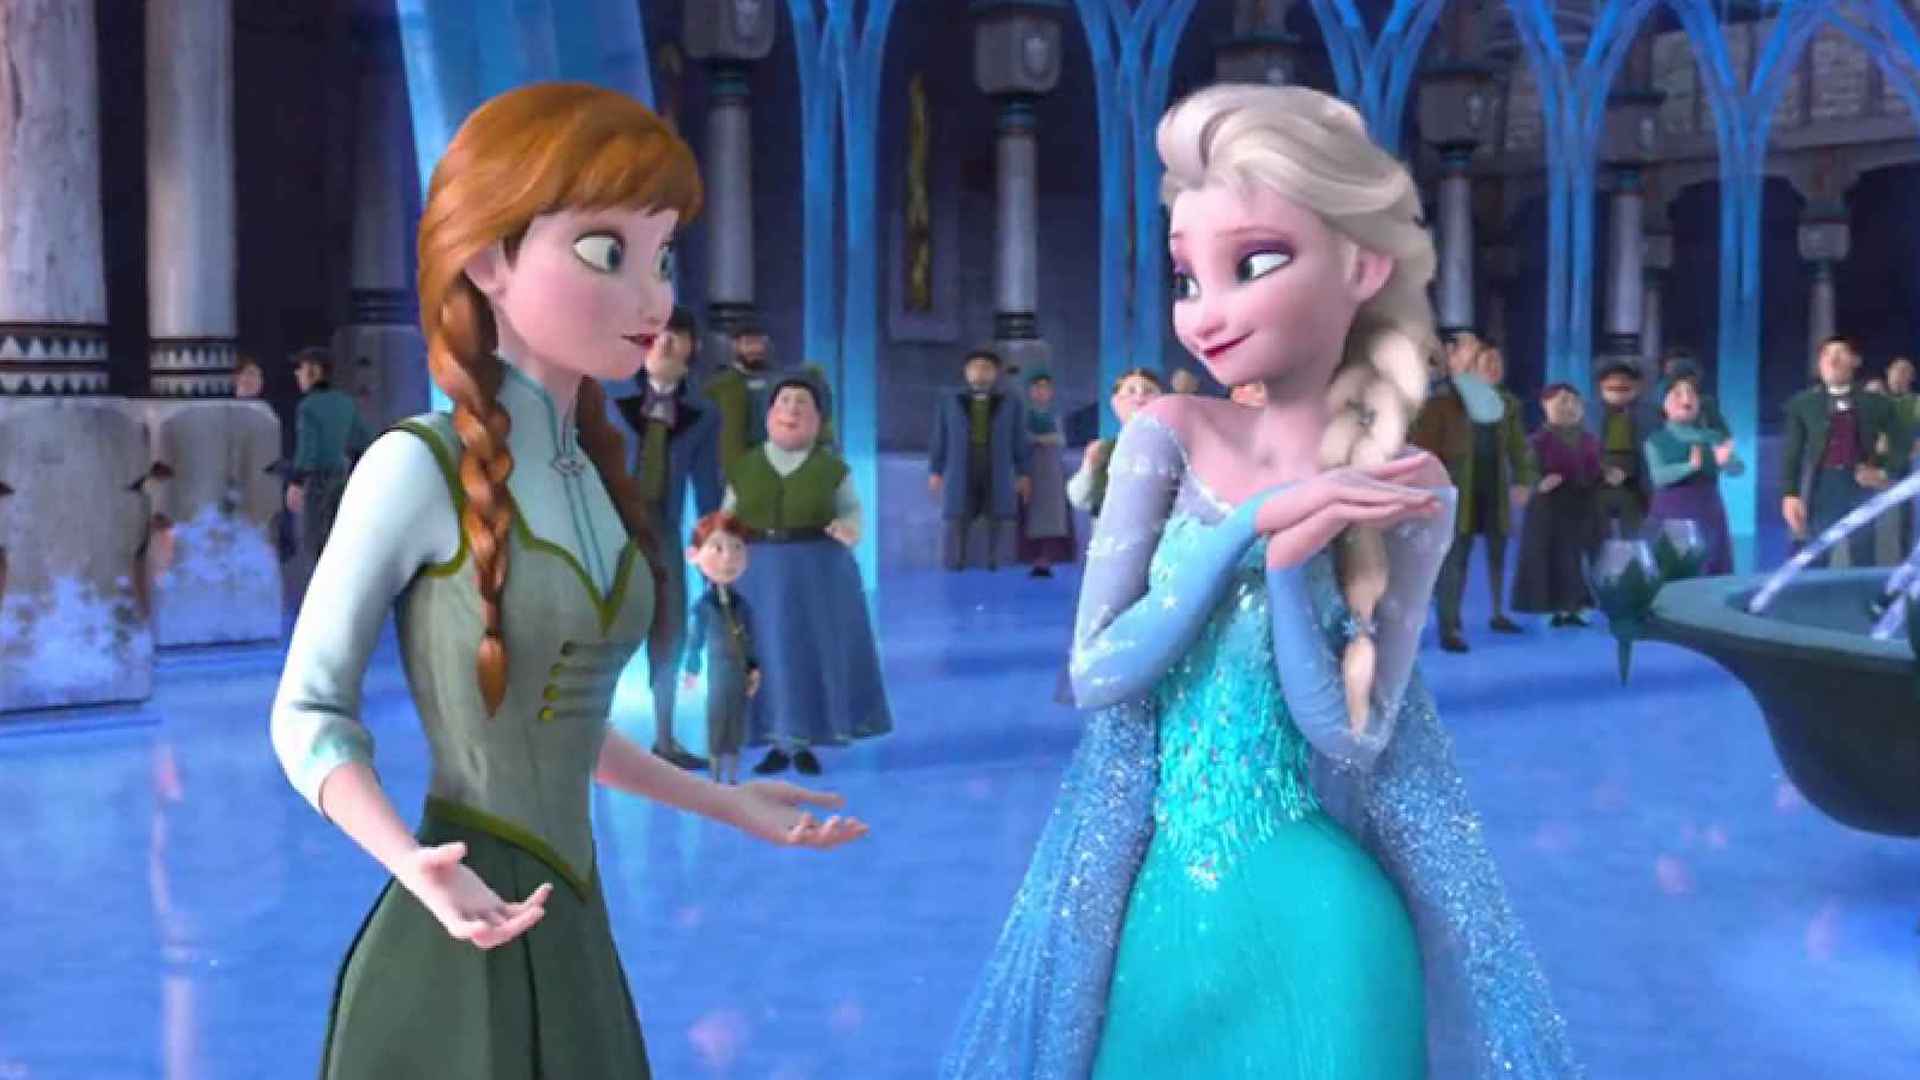 A scene from Frozen